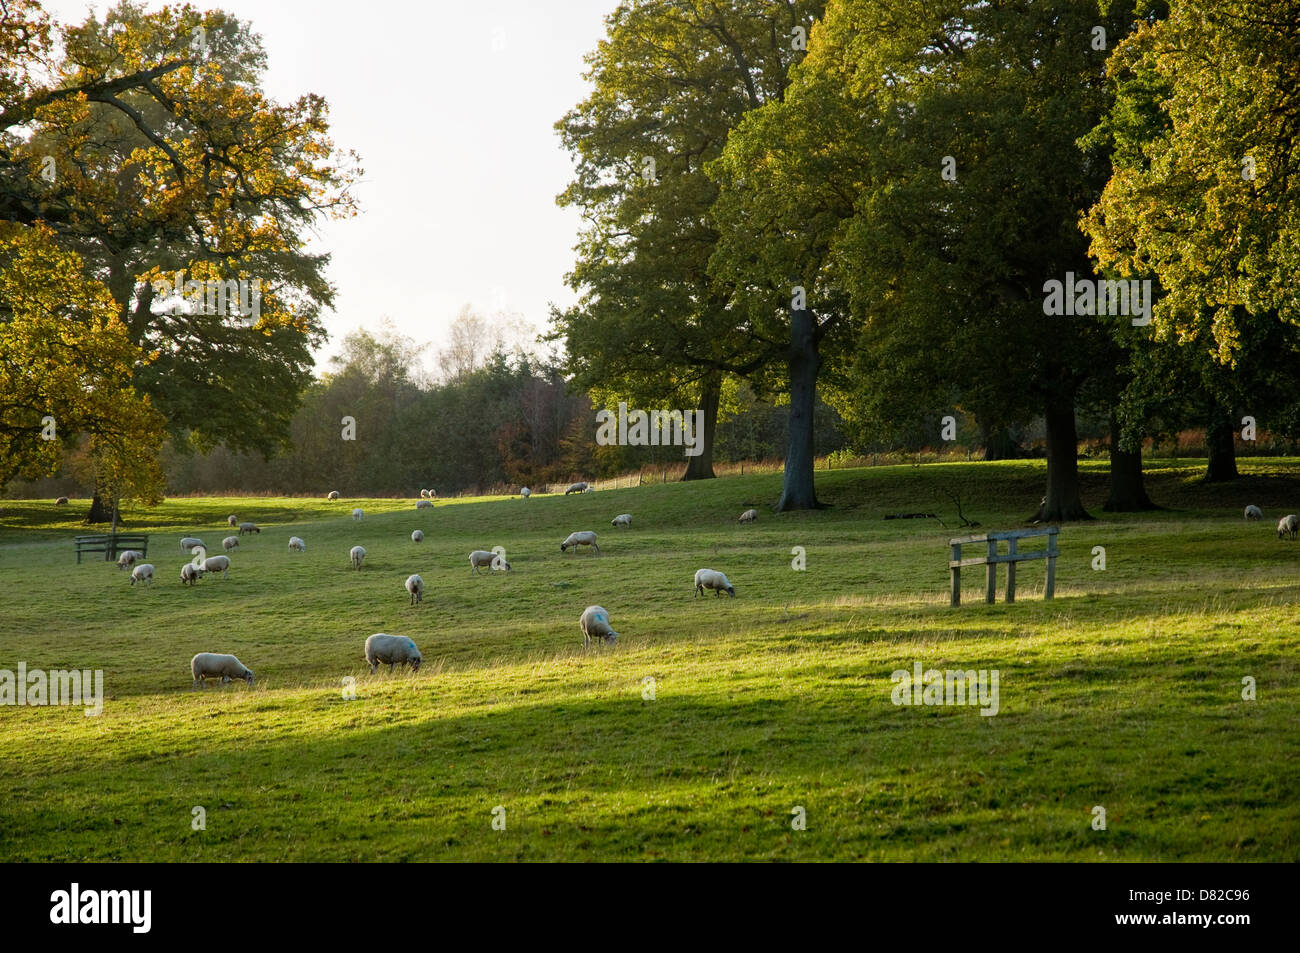 Schafbeweidung in einen englischen Landschaftsgarten - das Licht verblasst am Ende des Tages - eine pastorale Szene.  UK Stockfoto